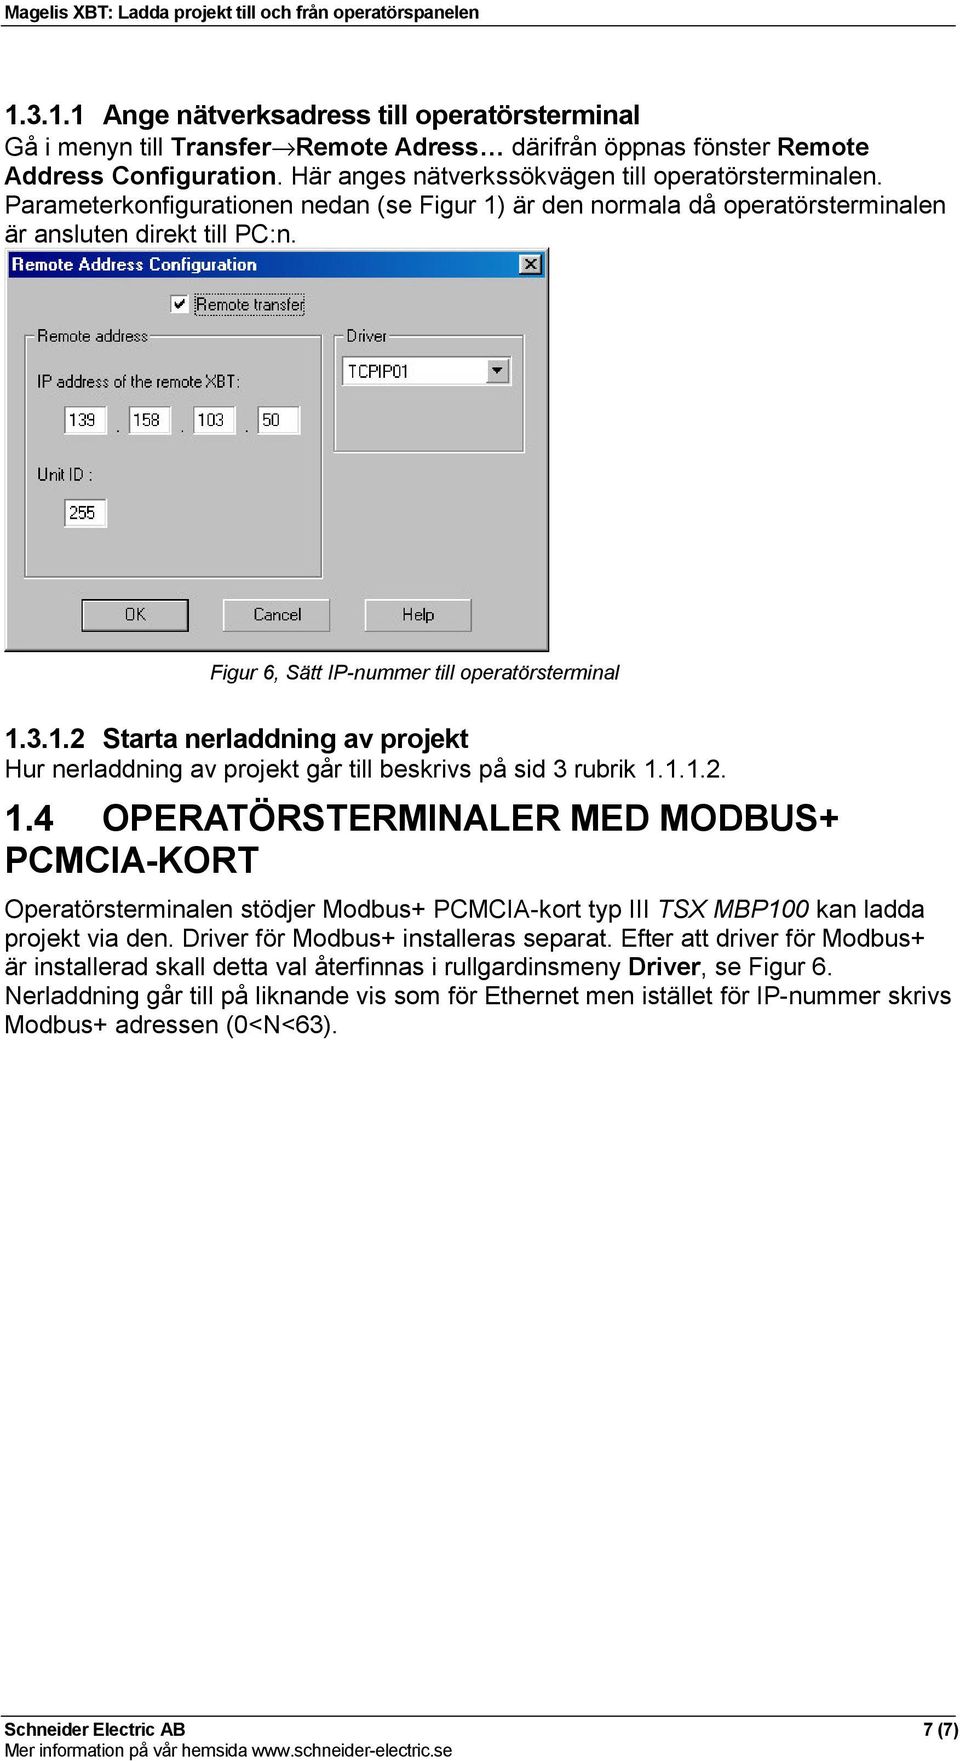 1.1.2. 1.4 OPERATÖRSTERMINALER MED MODBUS+ PCMCIA-KORT Operatörsterminalen stödjer Modbus+ PCMCIA-kort typ III TSX MBP100 kan ladda projekt via den. Driver för Modbus+ installeras separat.